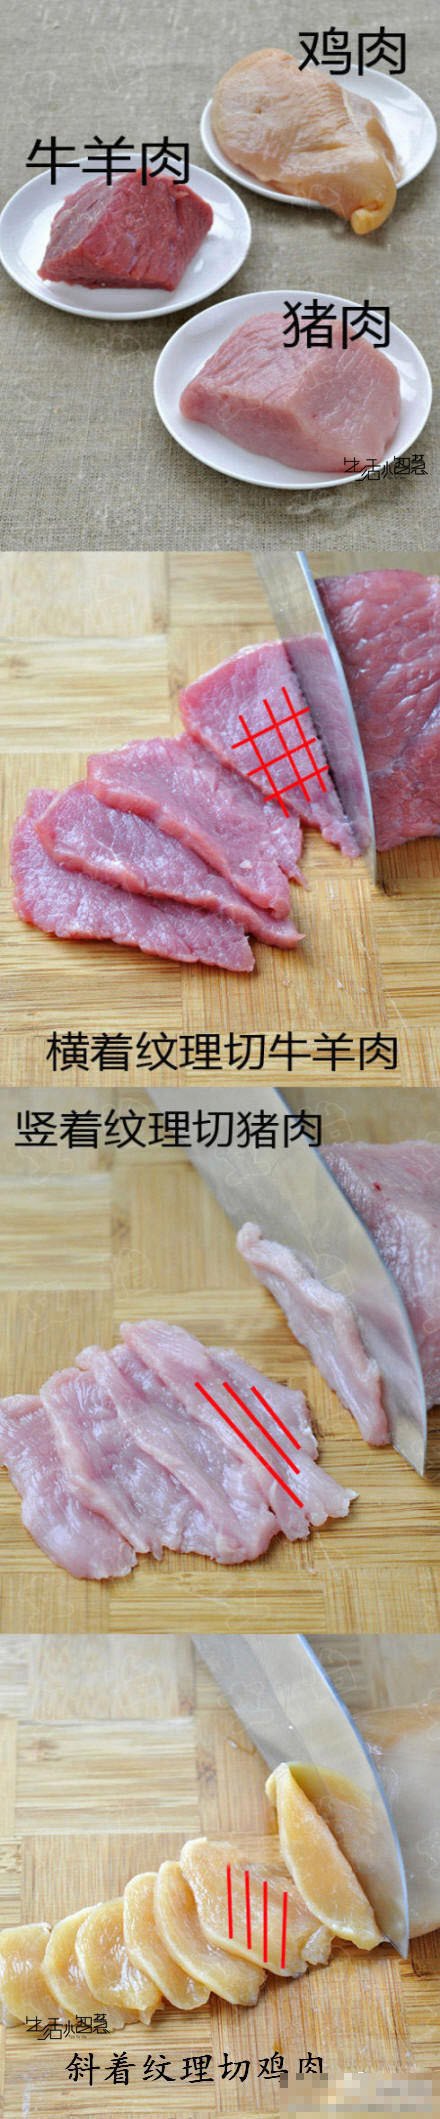 如果你向切牛羊肉那样,逆着猪肉的纹理切,炒出来的肉会散碎;3鸡肉:鸡